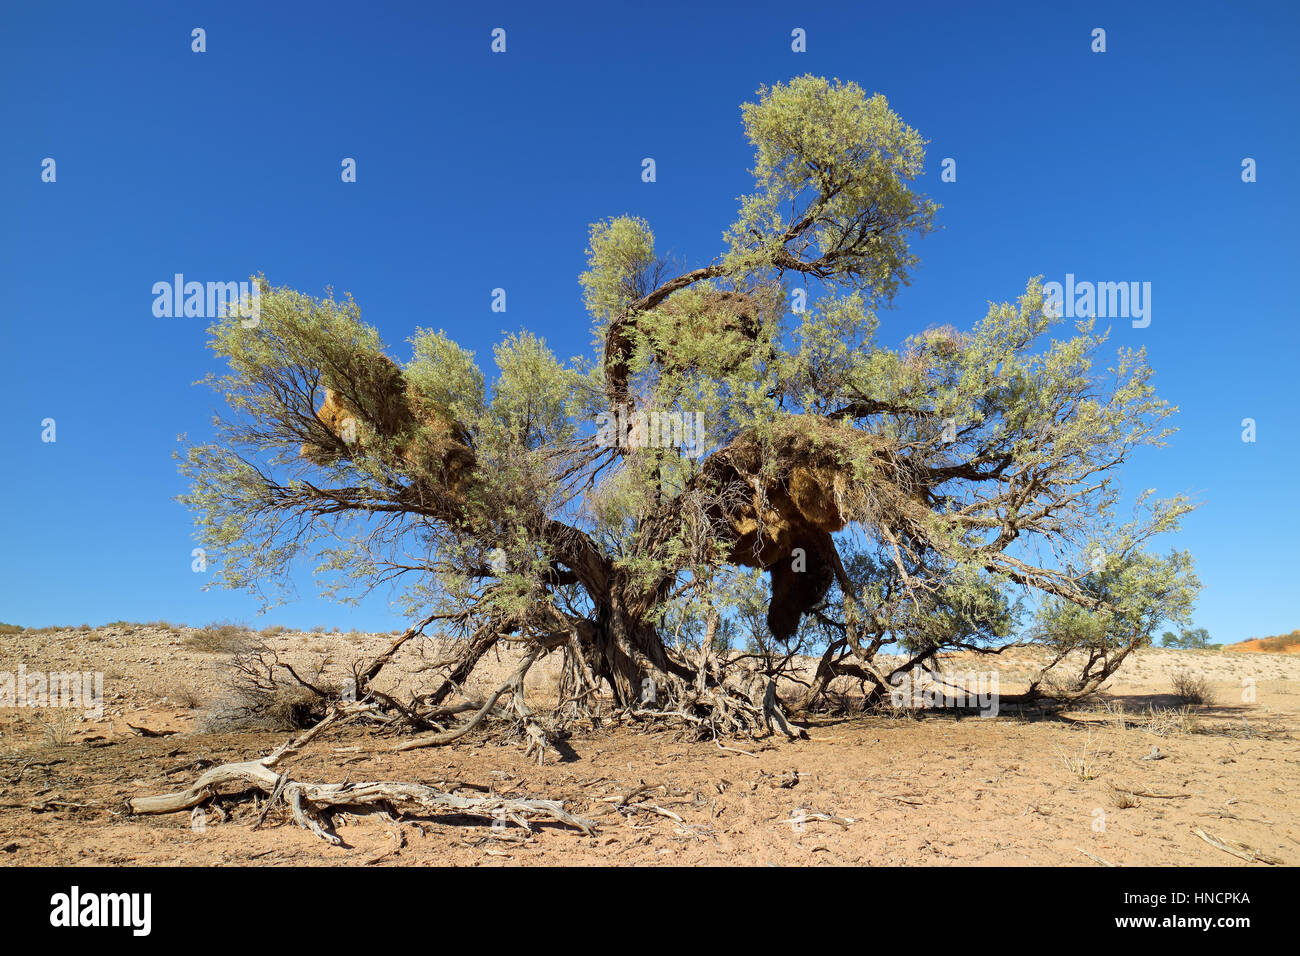 Thorn Tree africano con grandes nidos comunales de sociables tejedores, el desierto de Kalahari, Sudáfrica Foto de stock